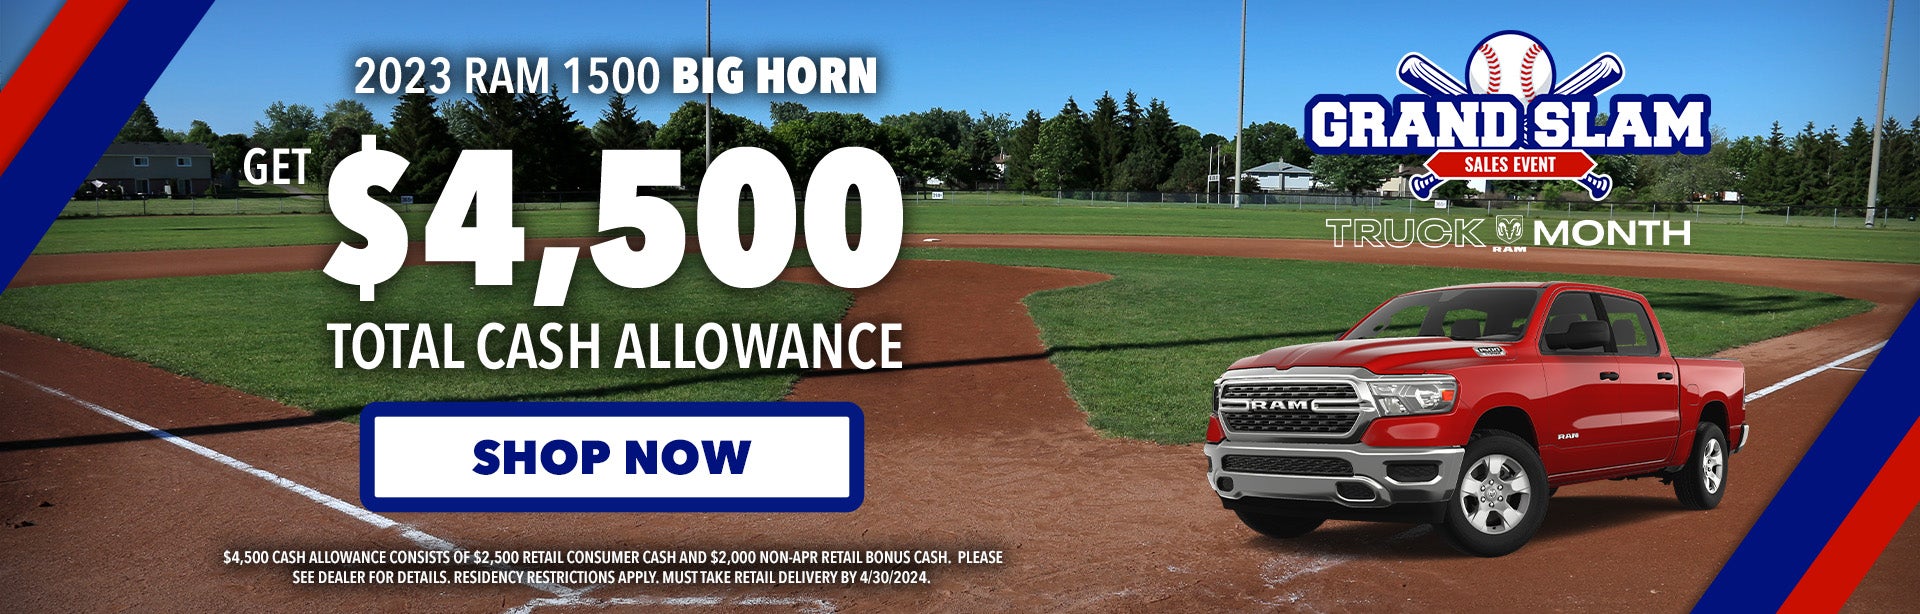 Get $4,500 total cash allowance on 2023 Ram 1500 Big Horn